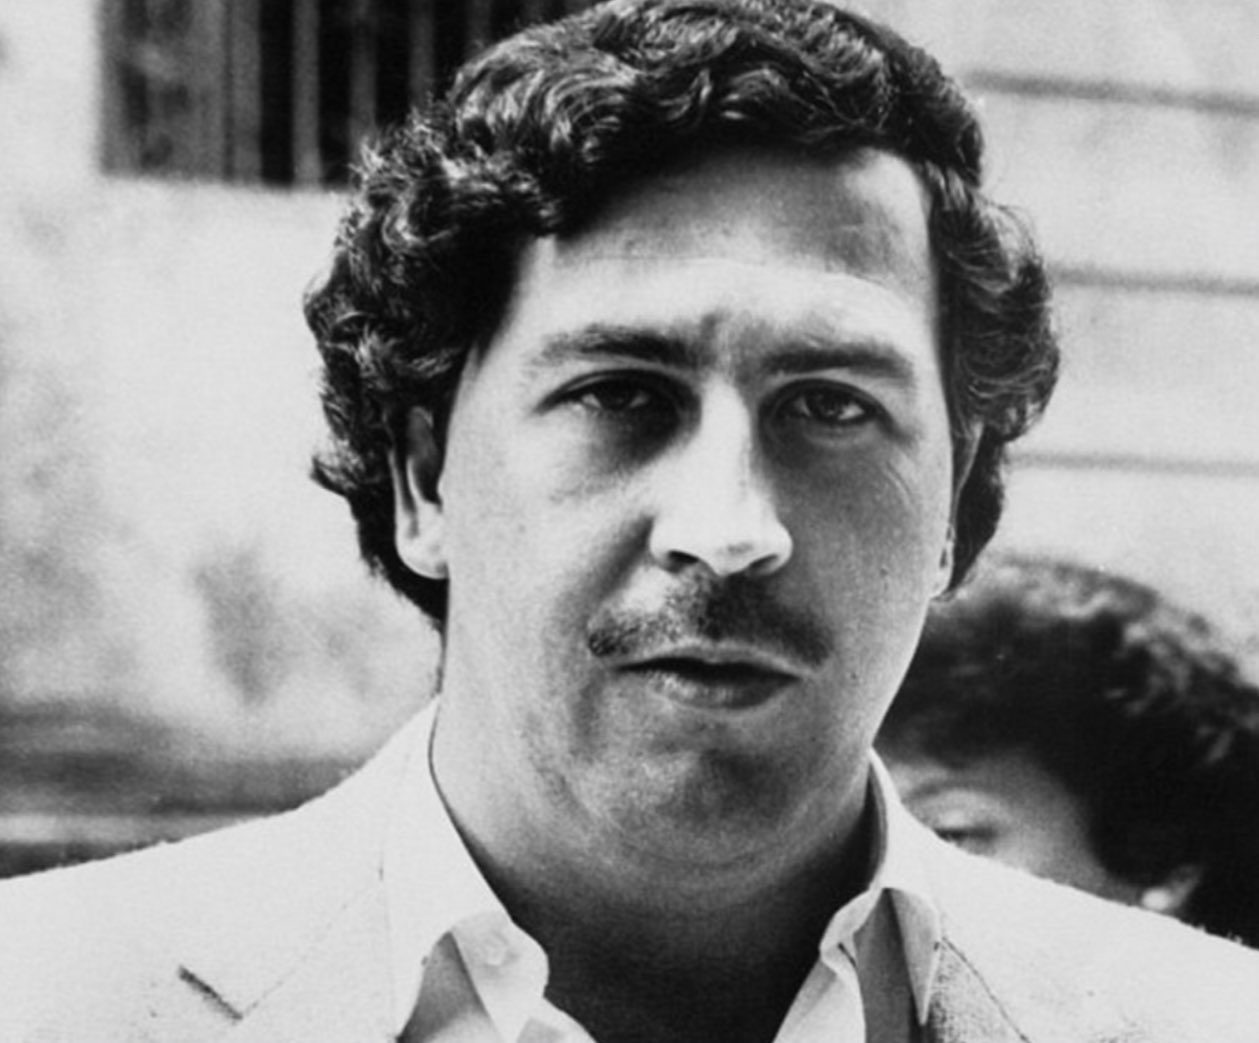 La Catedral: The 5-star Prison Pablo Escobar Built